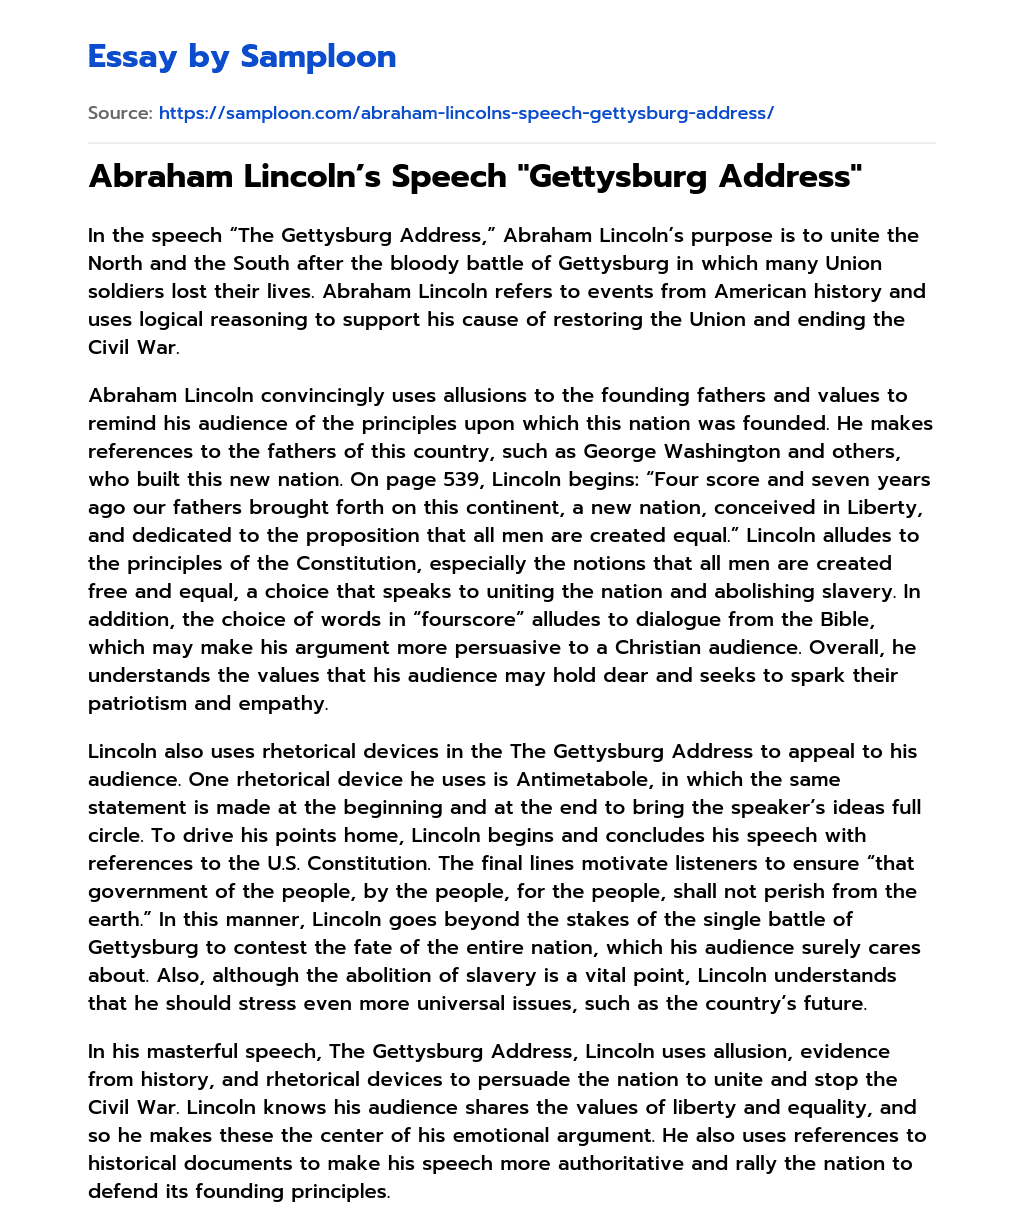 Abraham Lincoln’s Speech “Gettysburg Address” essay